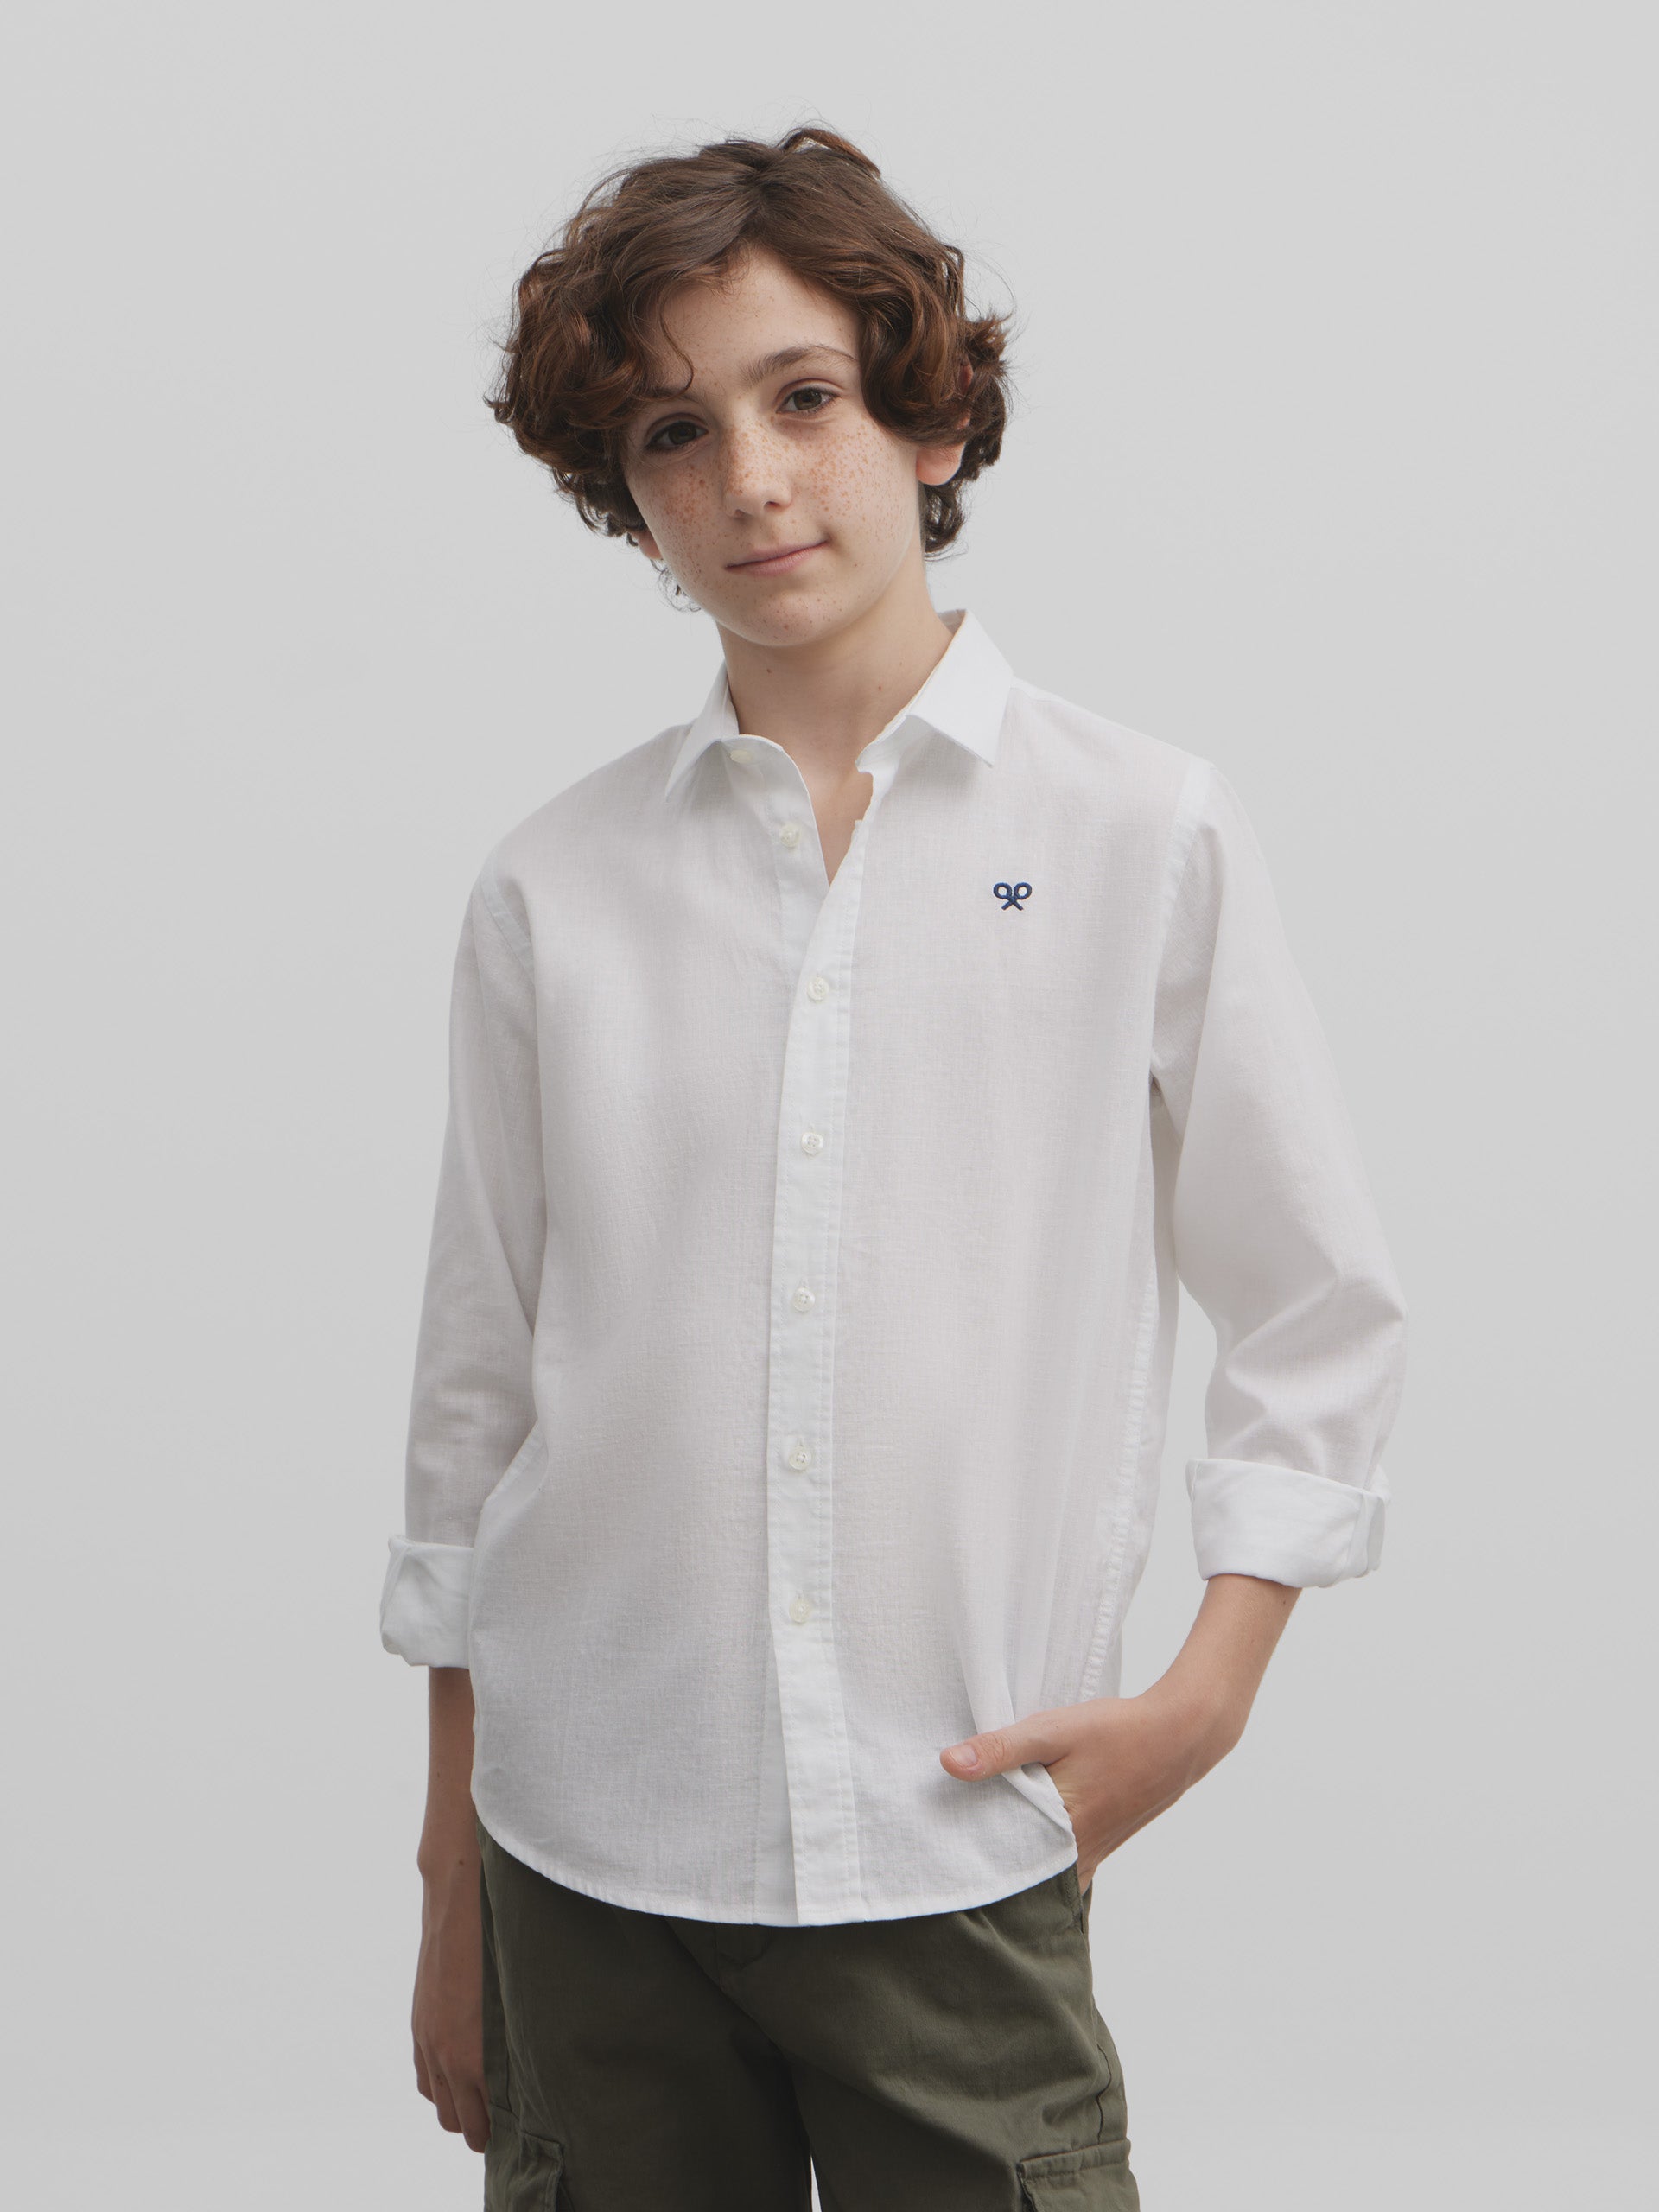 White soft kids sport shirt